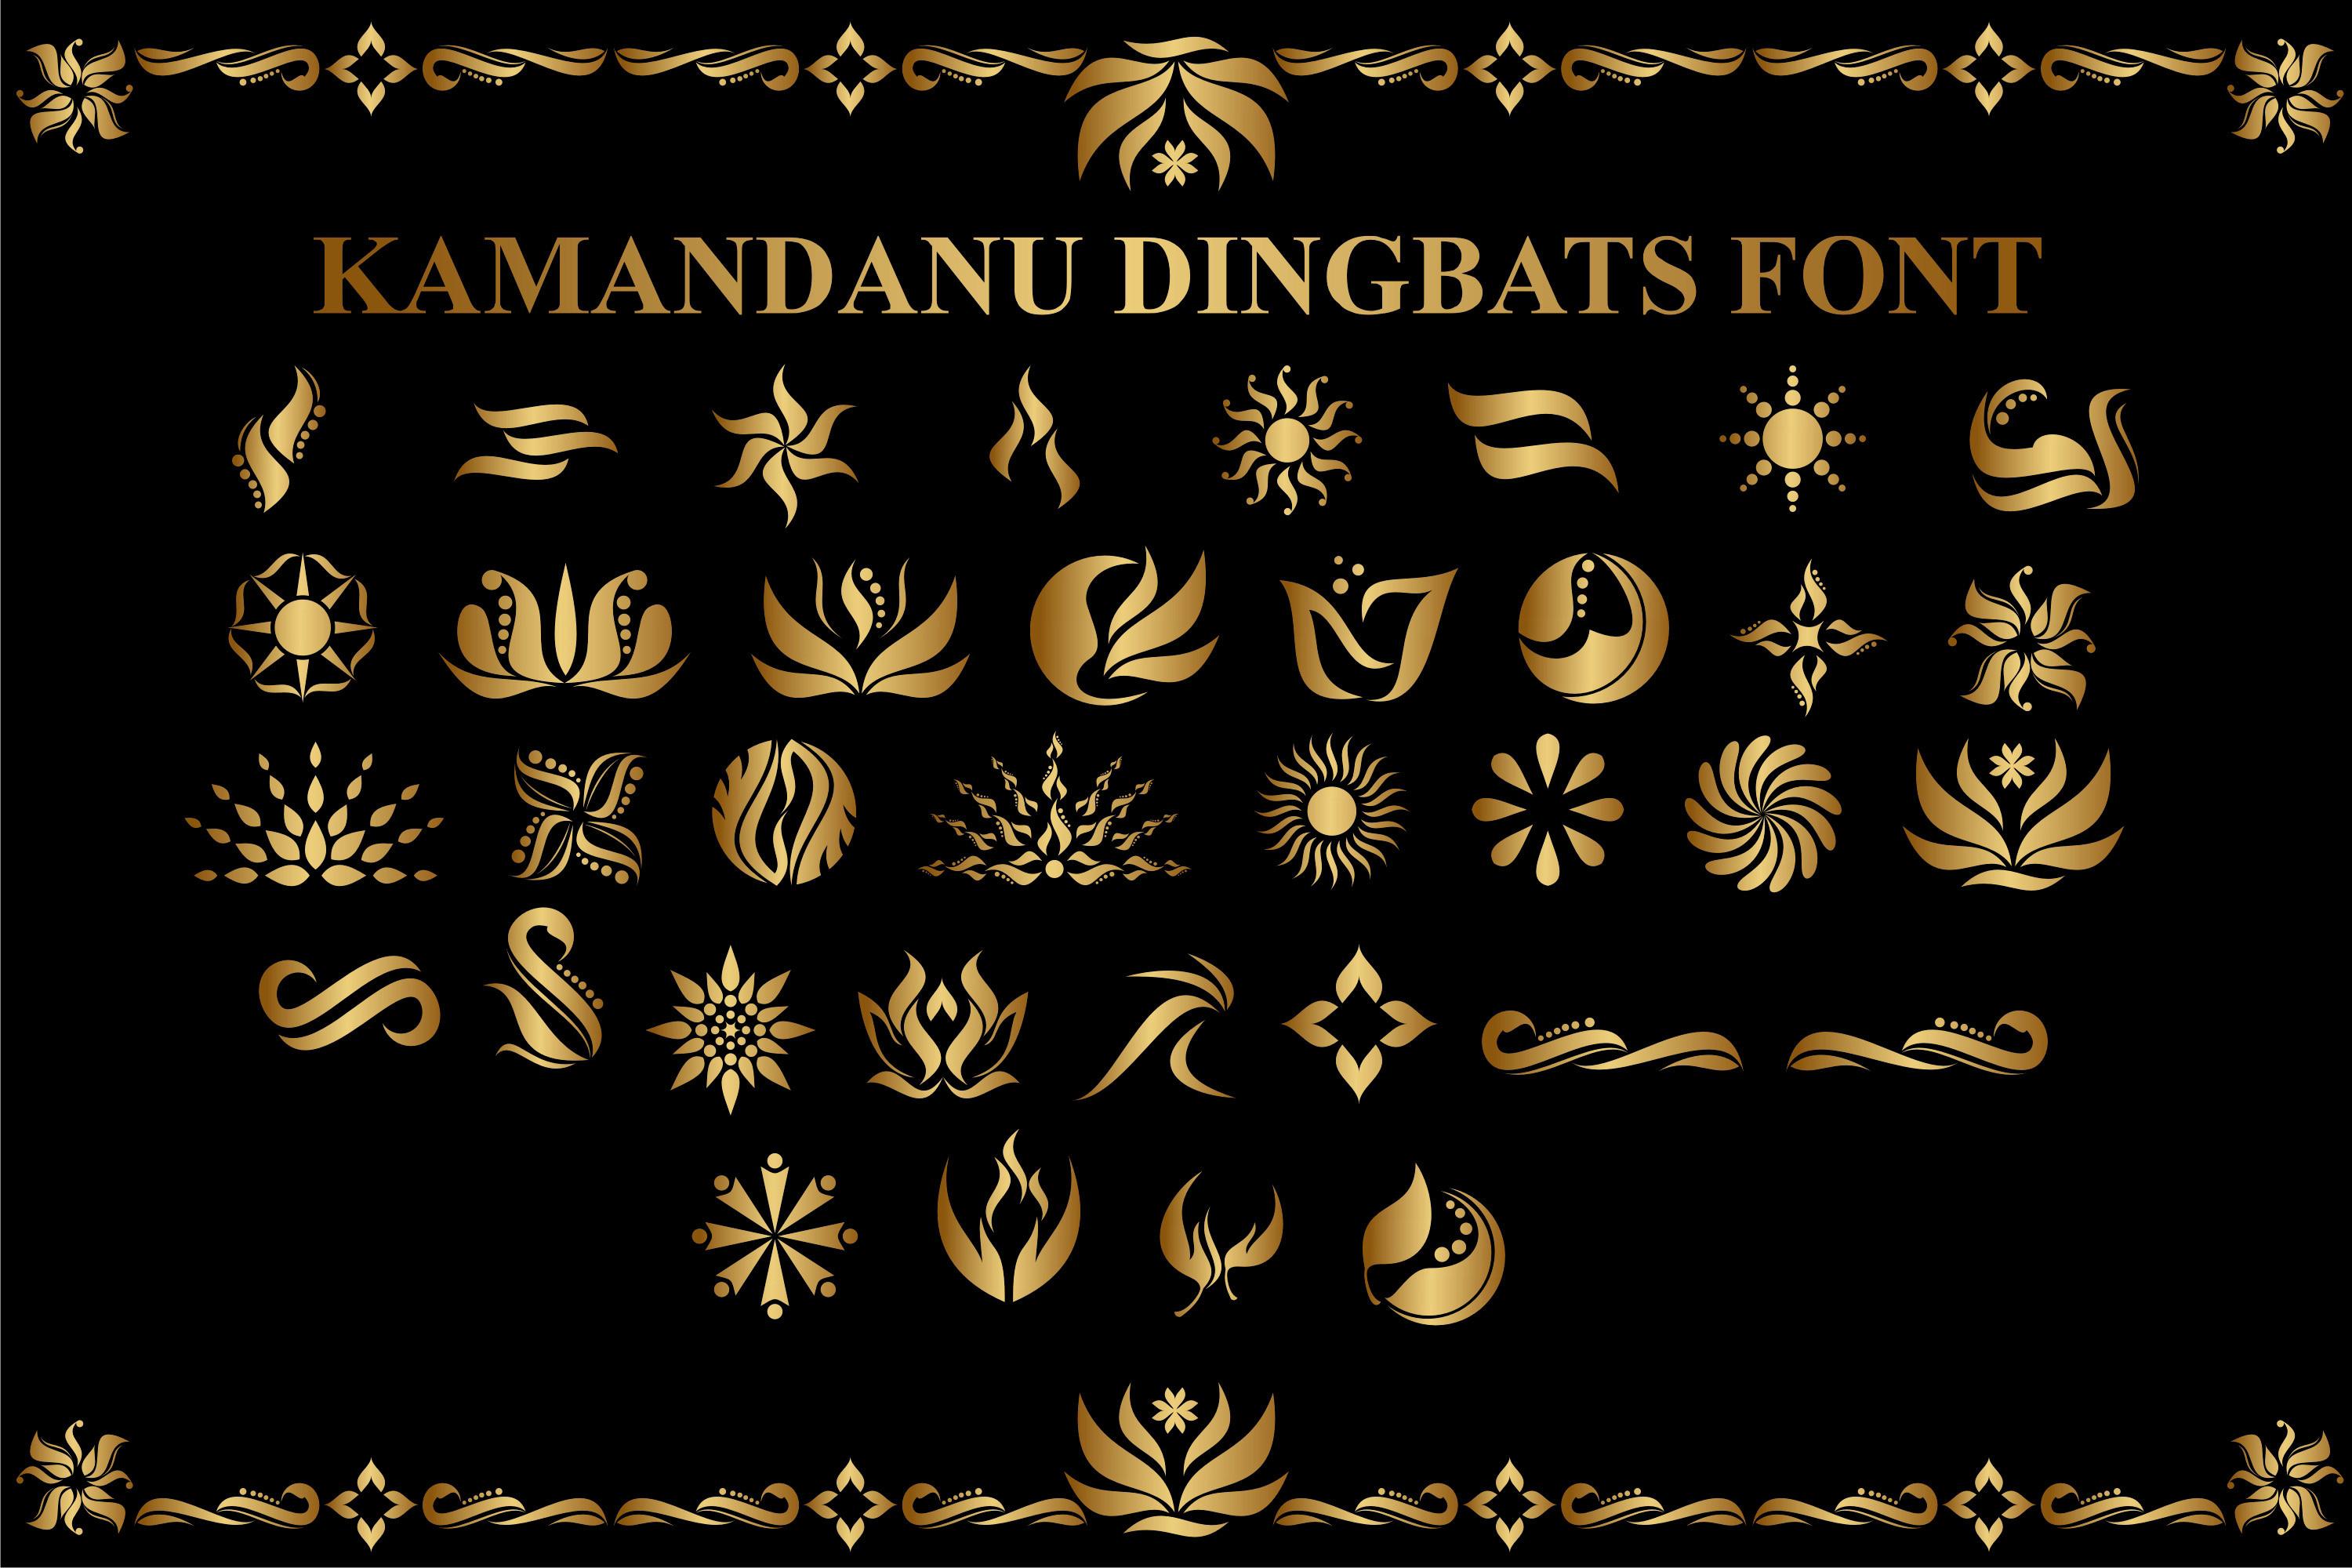 Kamandanu Dingbats Font